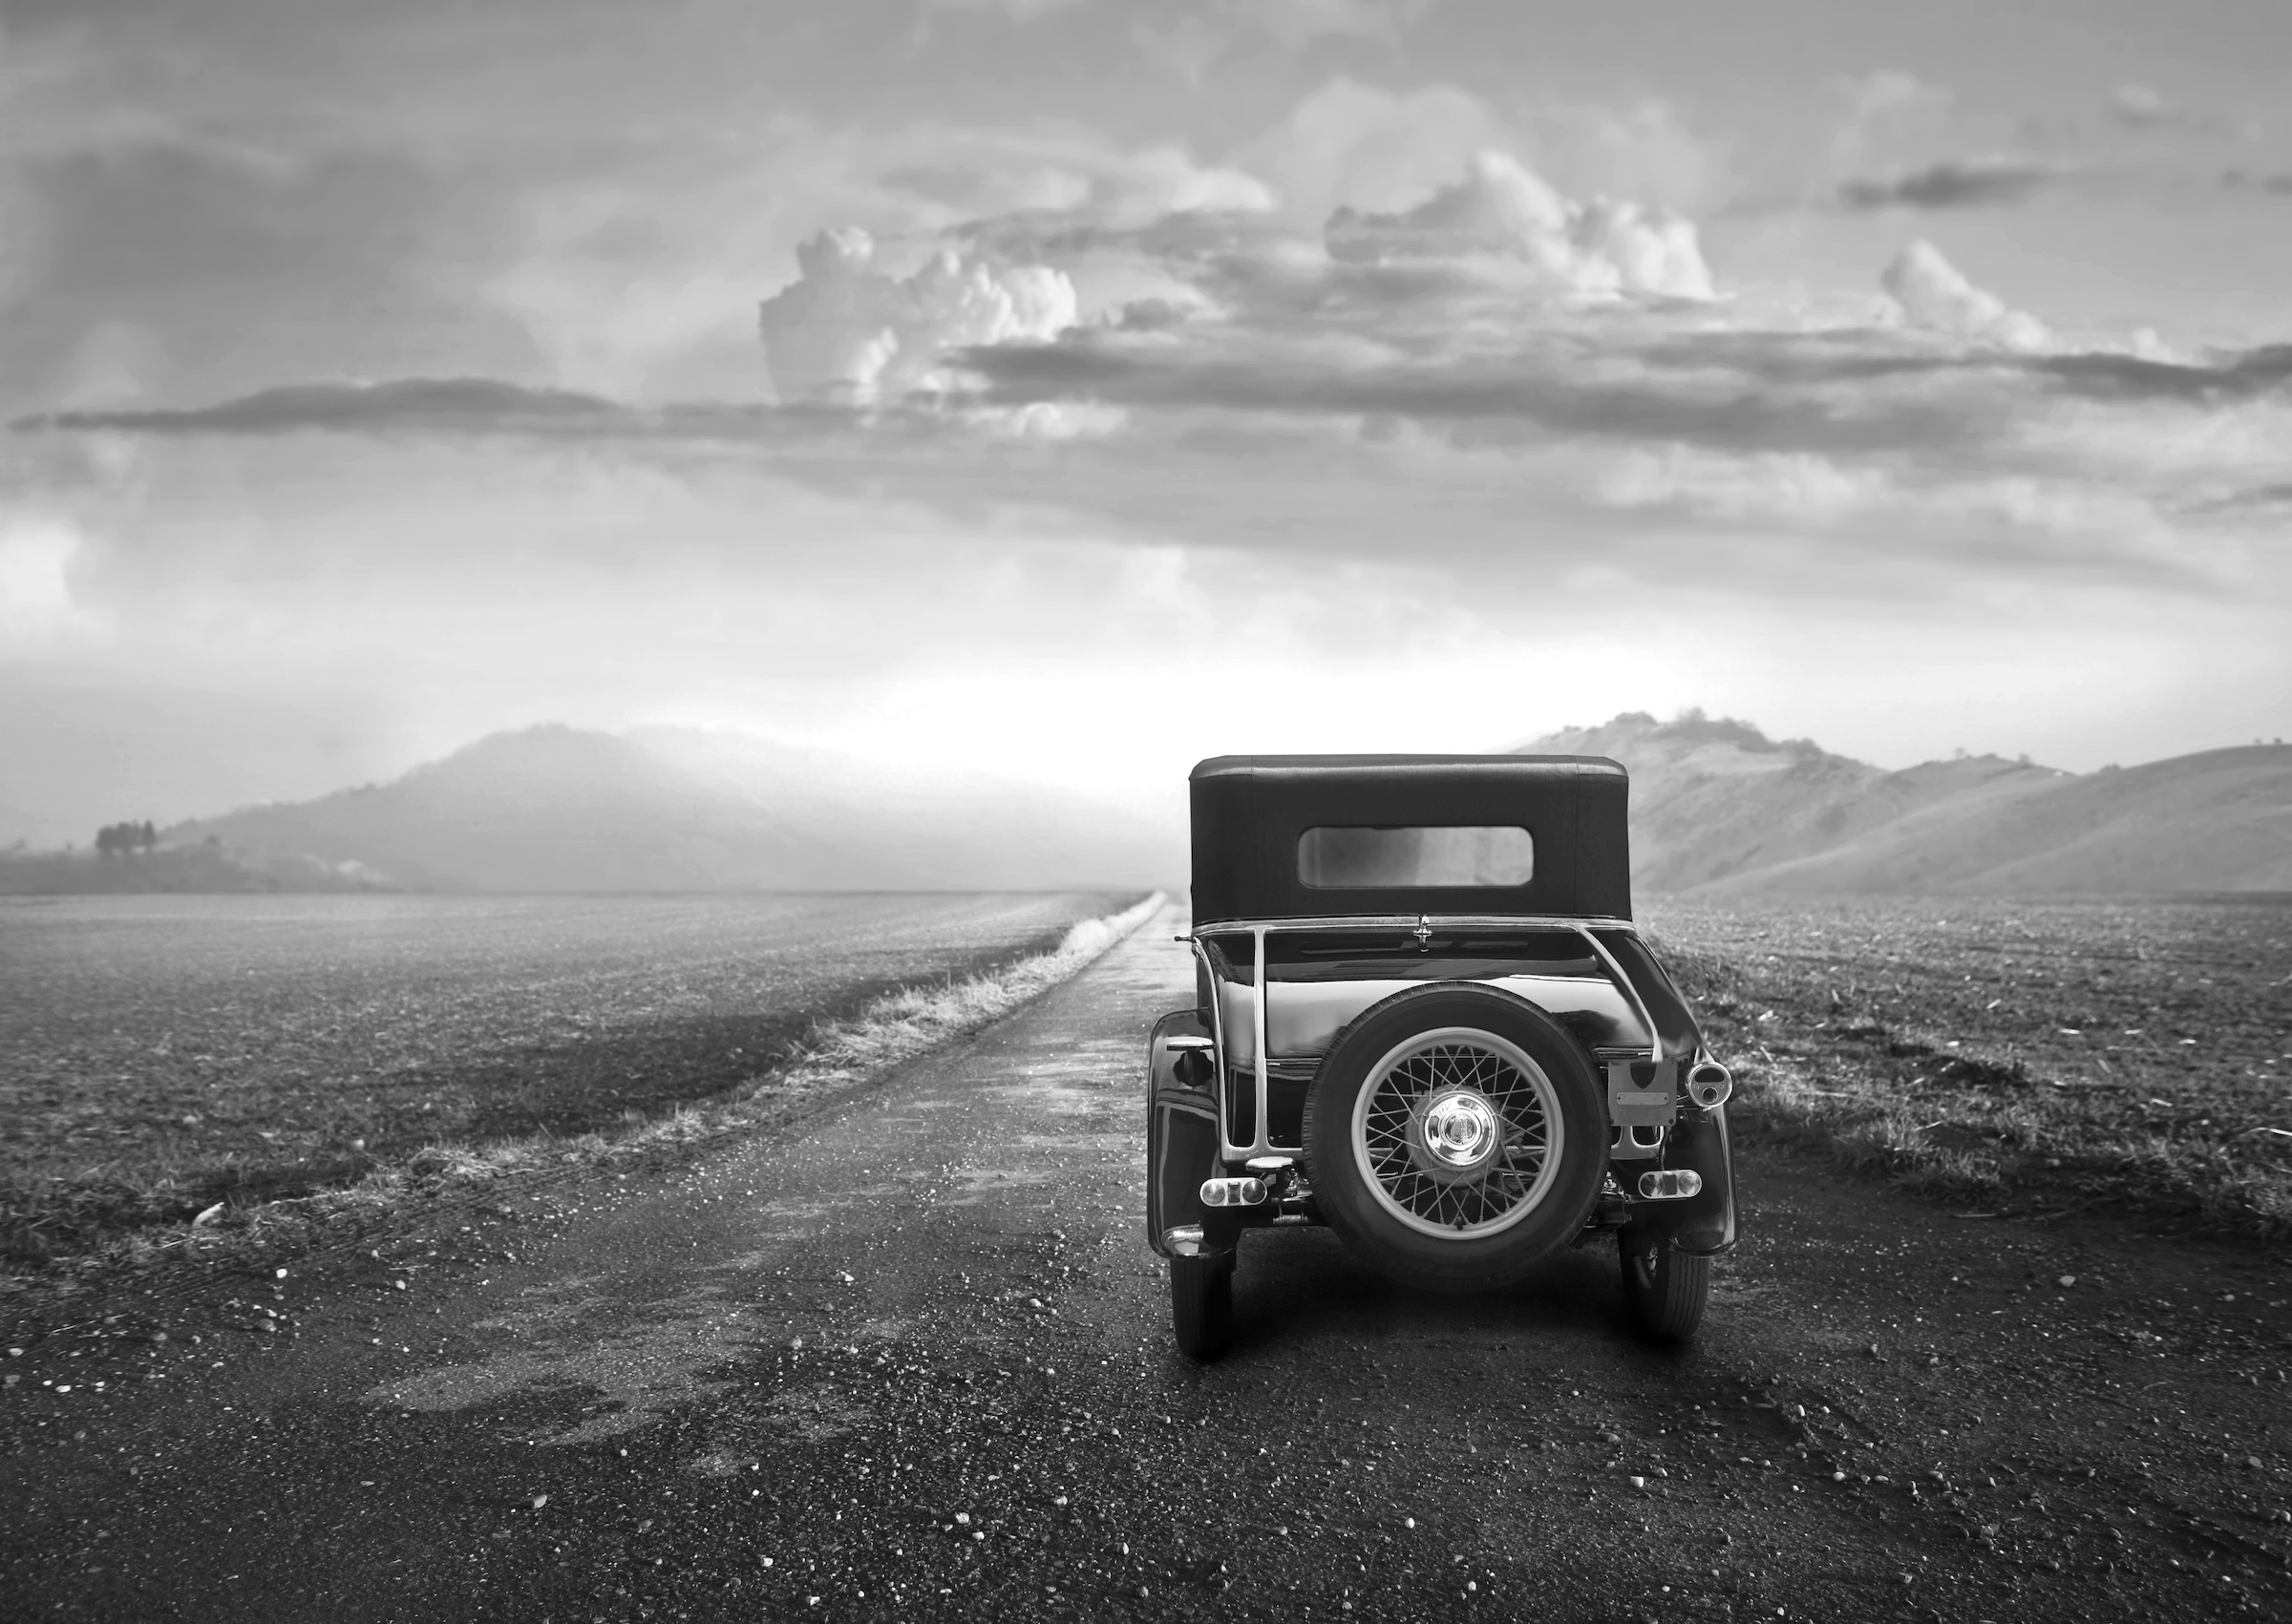 Papermoon Fototapete »Landschaft mit Auto Schwarz Weiß« bestellen